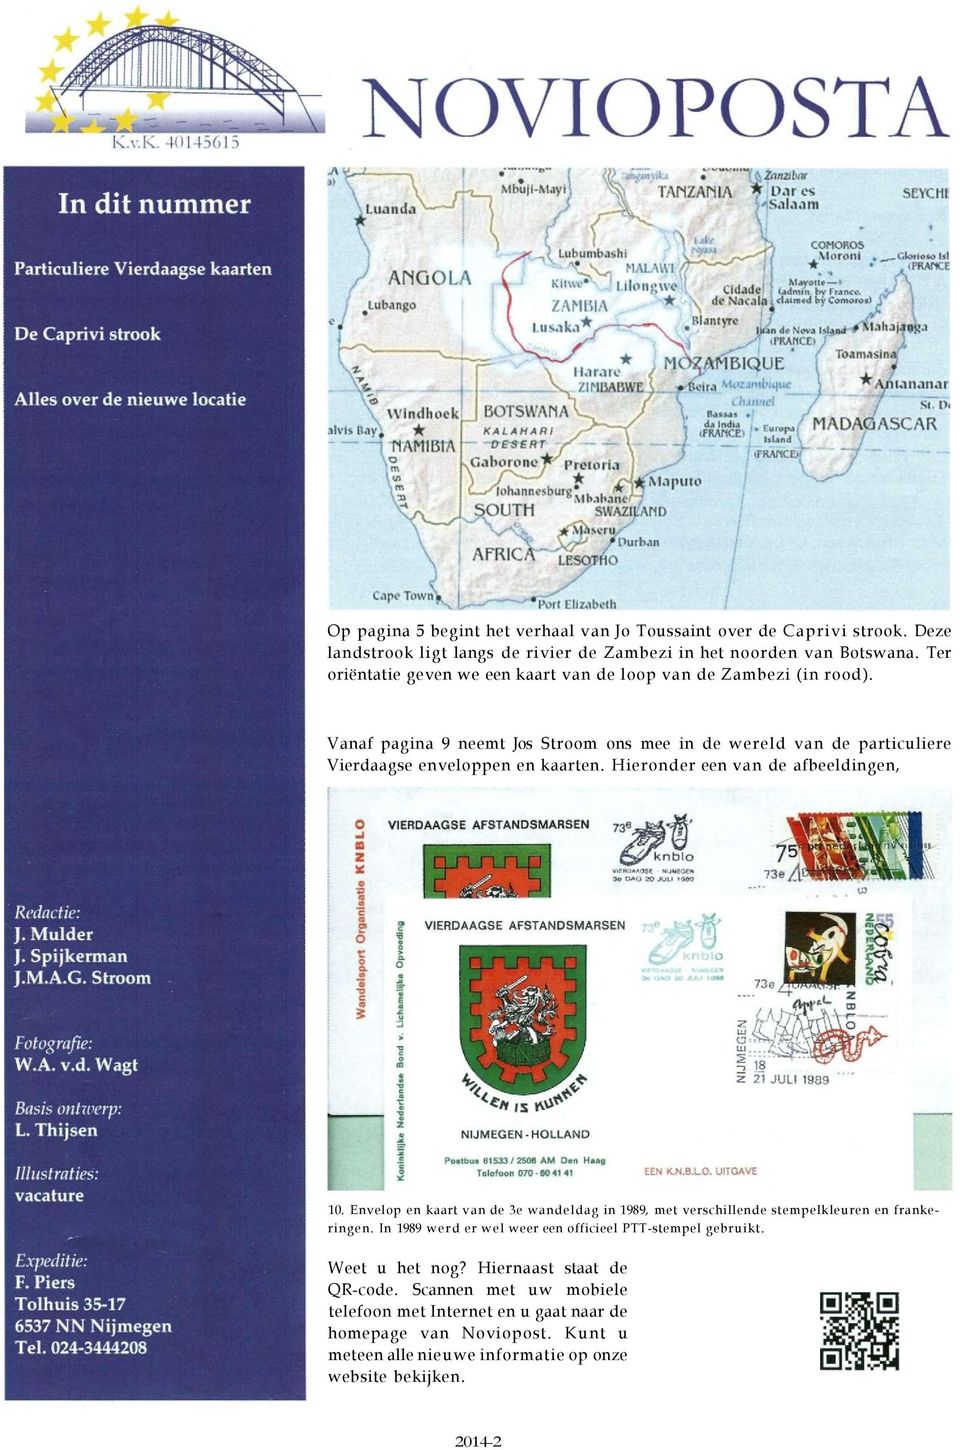 Hieronder een van de afbeeldingen, 10. Envelop en kaart van de 3e wandeldag in 1989, met verschillende stempelkleuren en frankeringen.